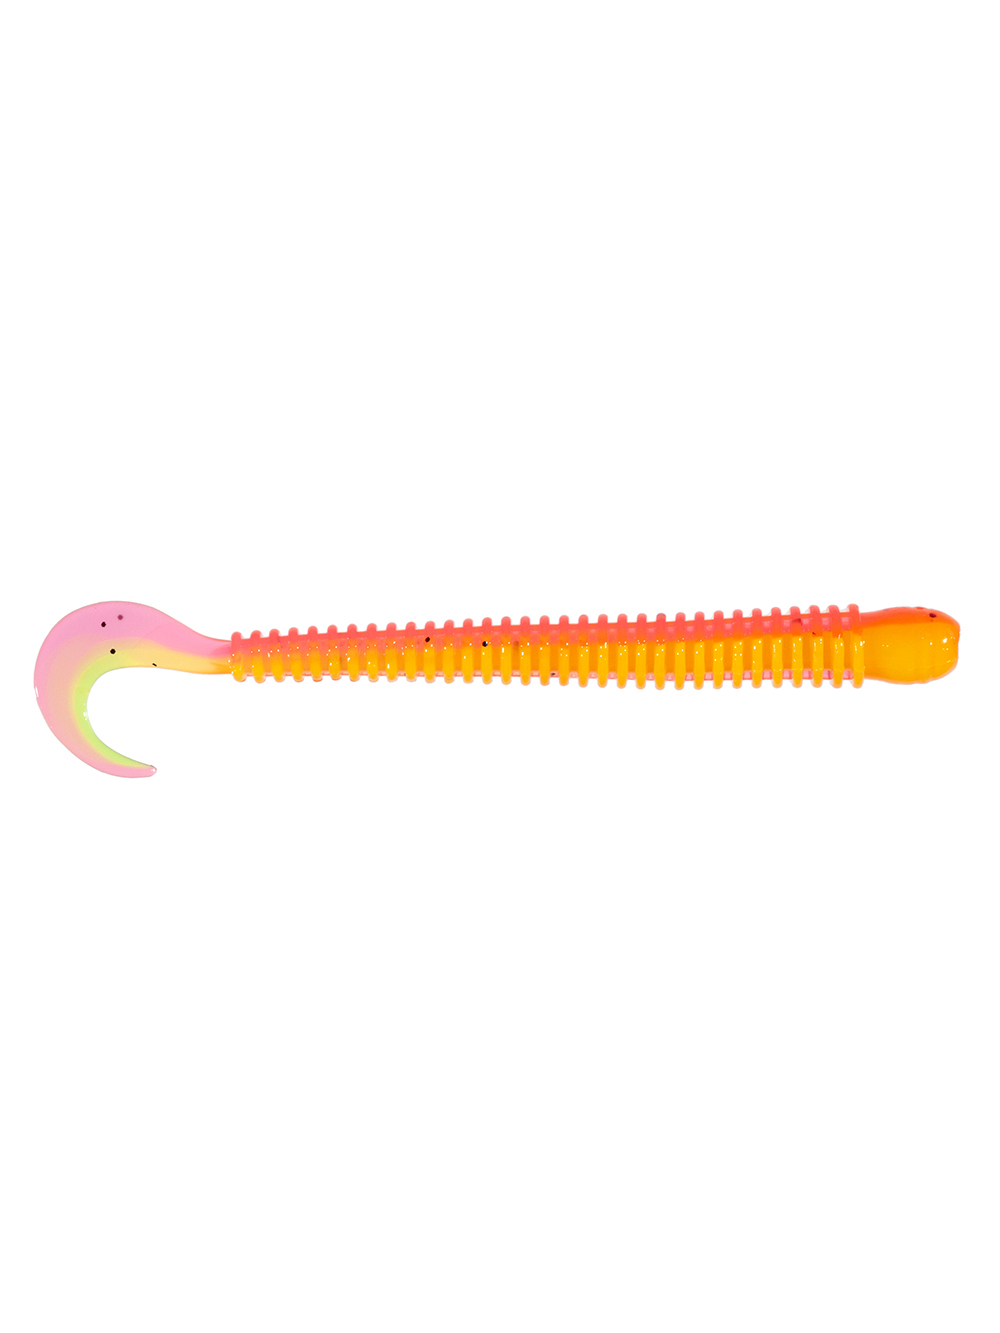 Приманка ZUB-WORM-ZANDER 108мм(4,3")-5шт, (цвет 023) желтый верх-розовый низ